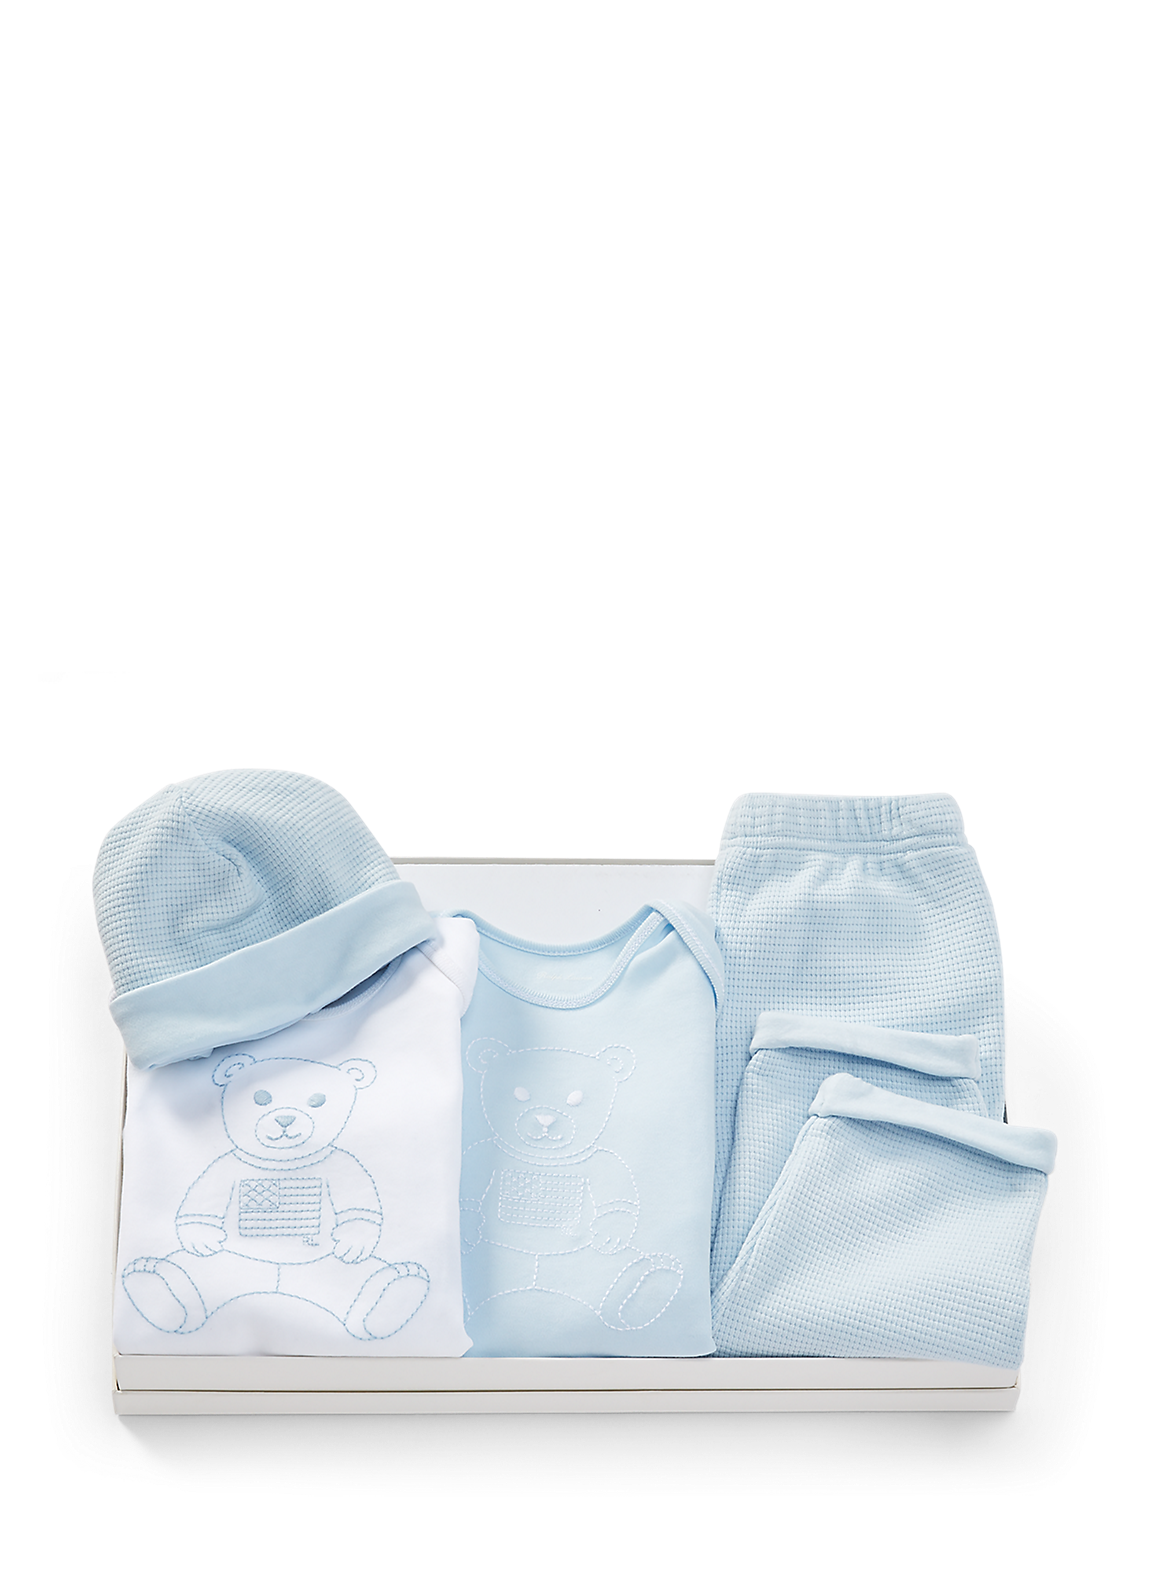 Polo ベア 4ピース ギフト セット ベビー用品/おくるみ/ギフト/出産祝い/赤ちゃん用 | ラルフ ローレン公式オンラインストア